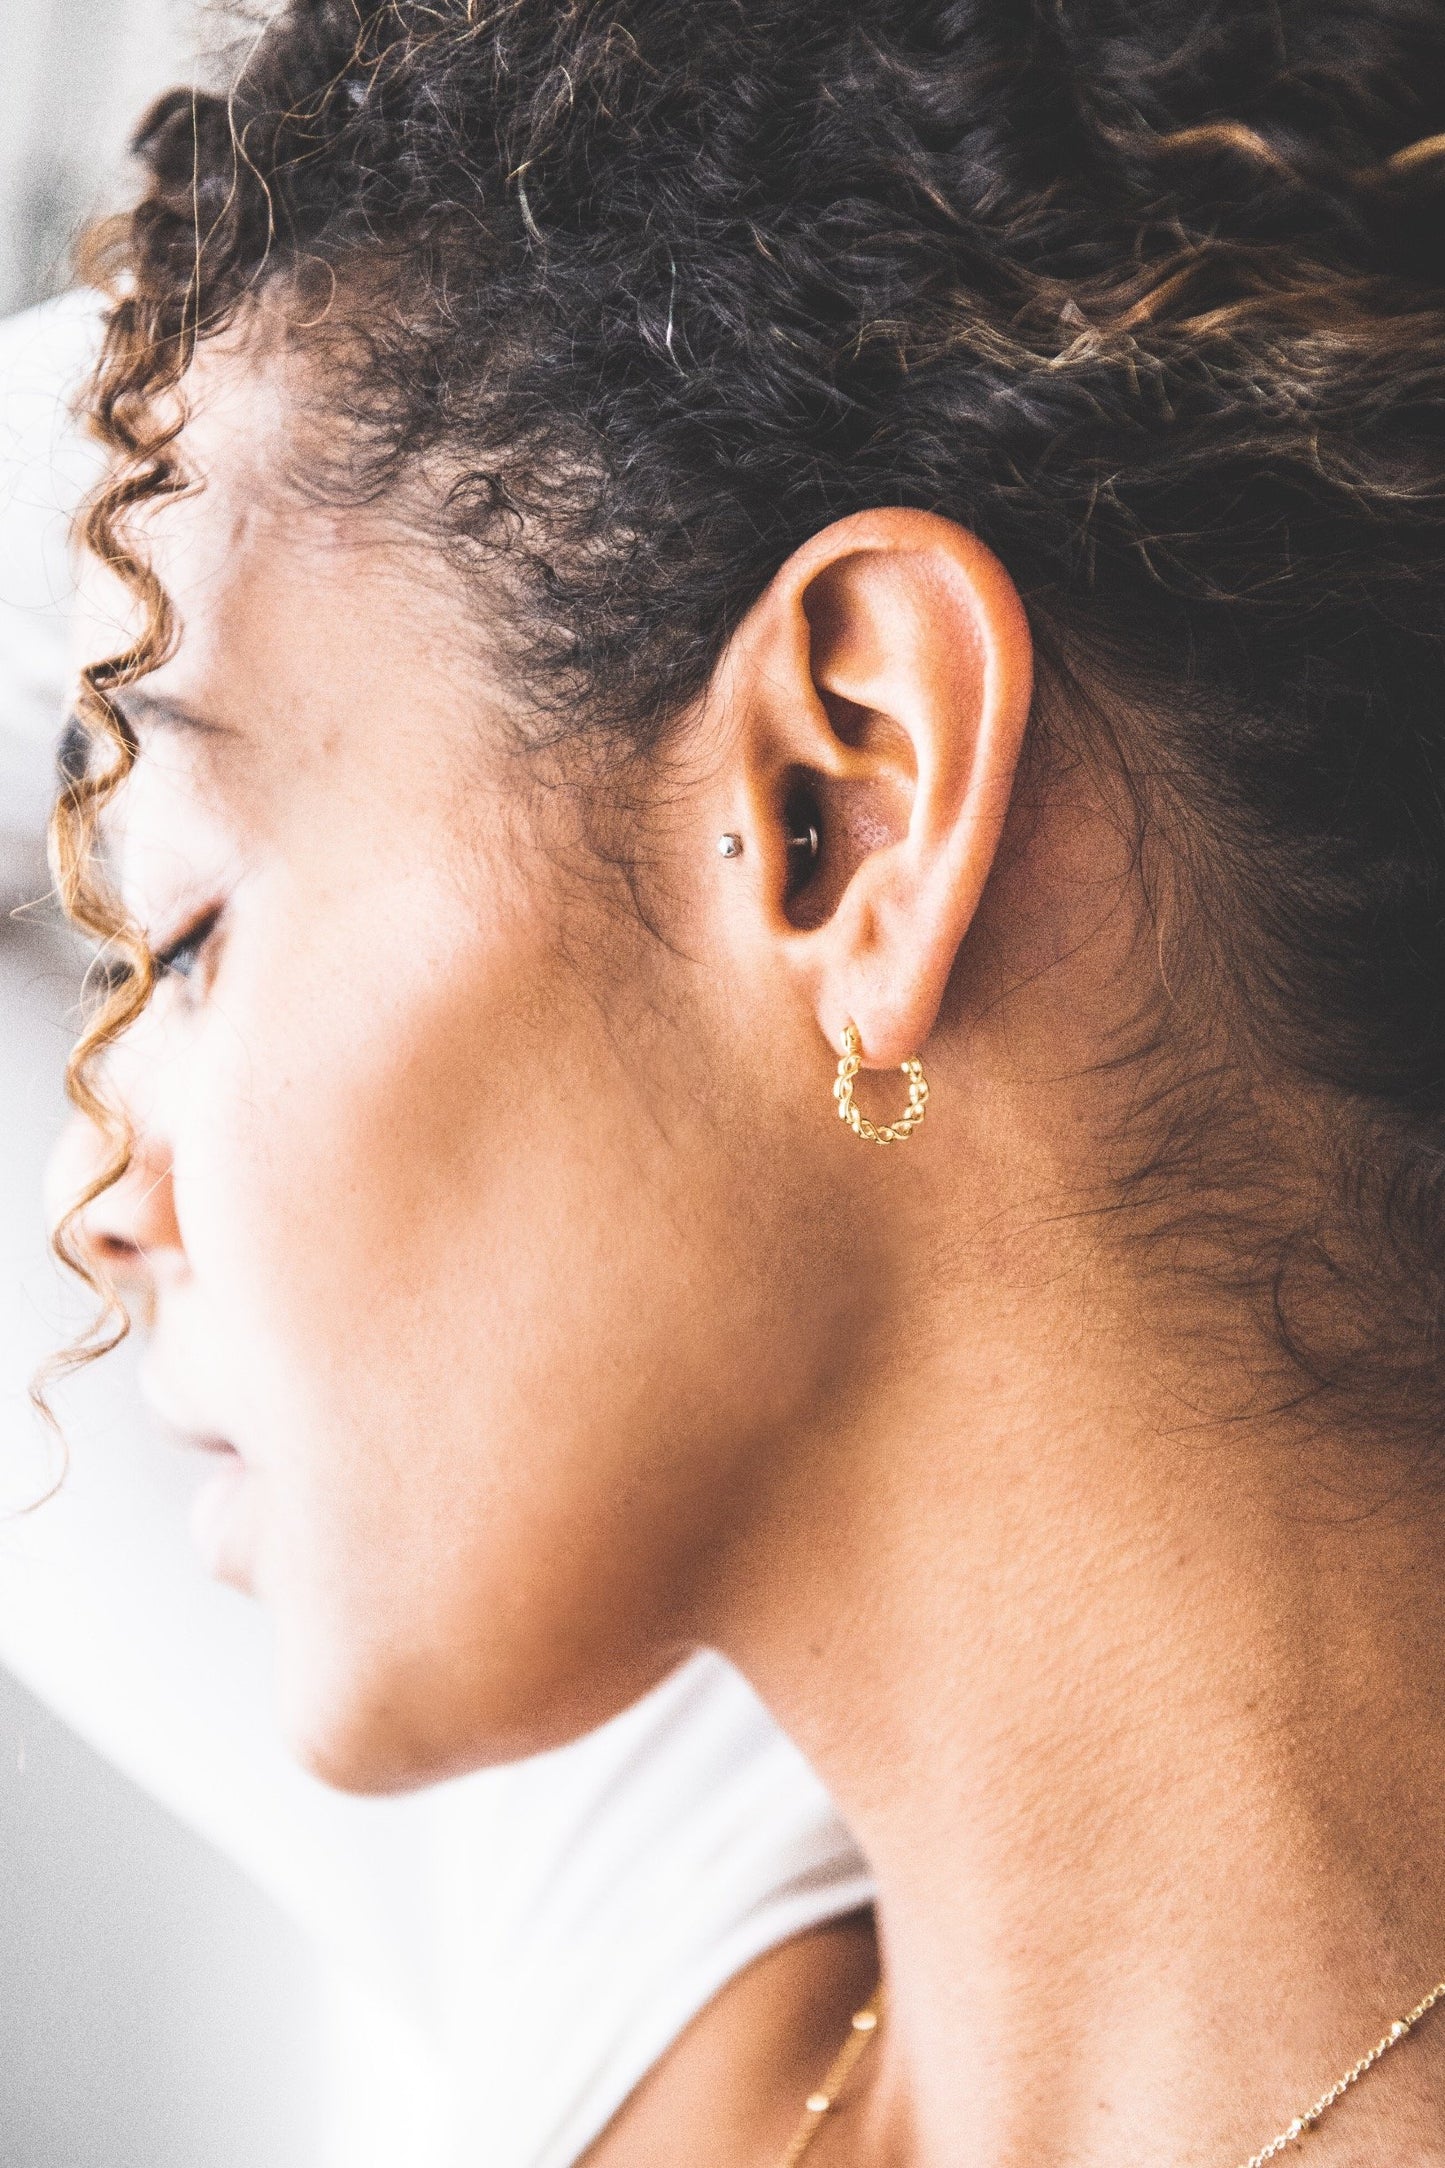 Woman wearing Twisted Hoop earring